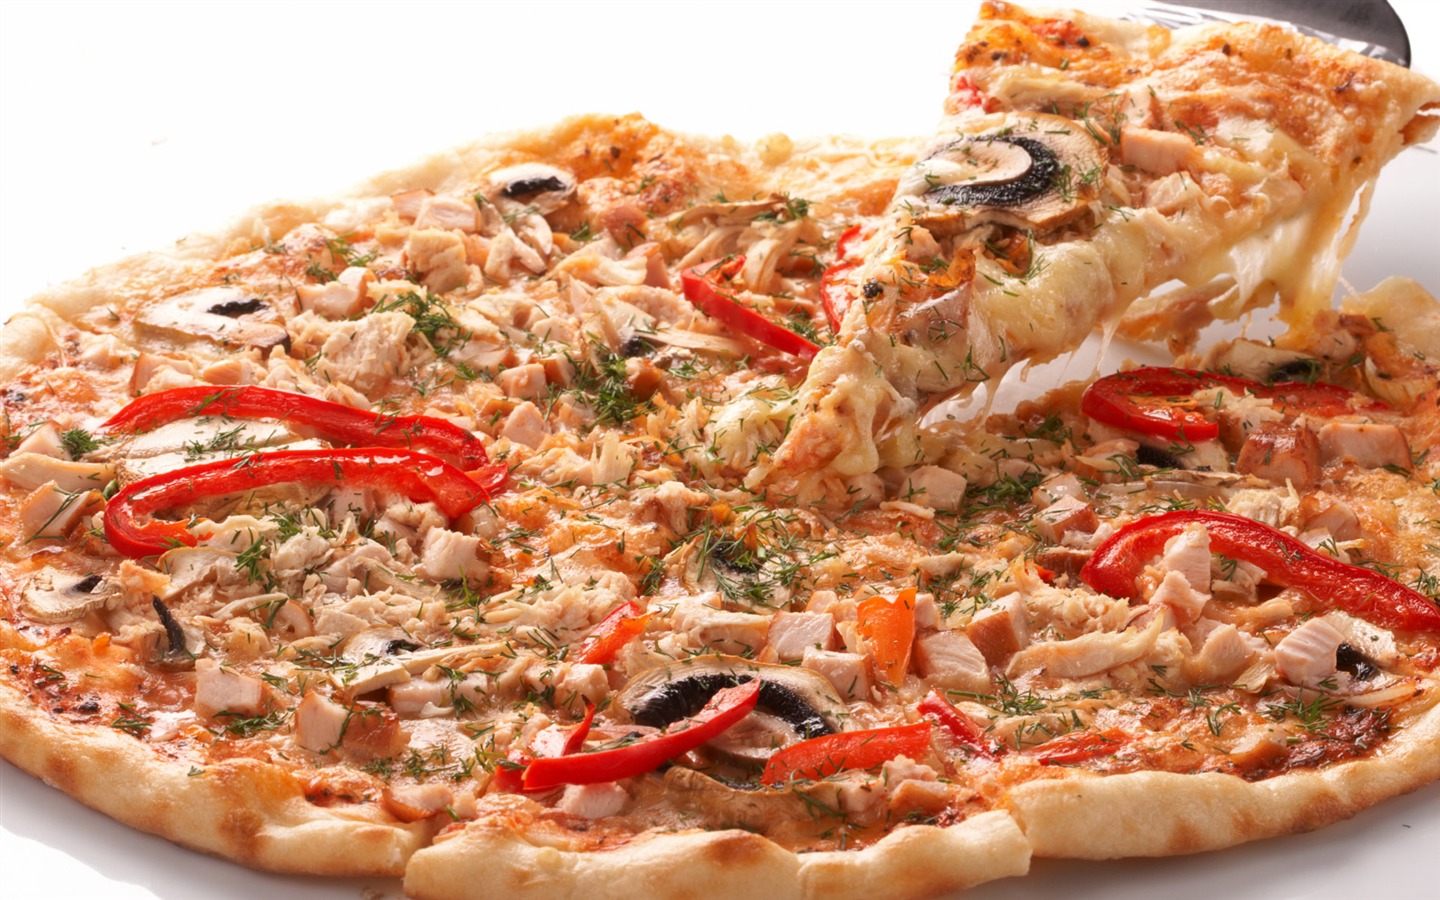 Fondos de pizzerías de Alimentos (4) #6 - 1440x900